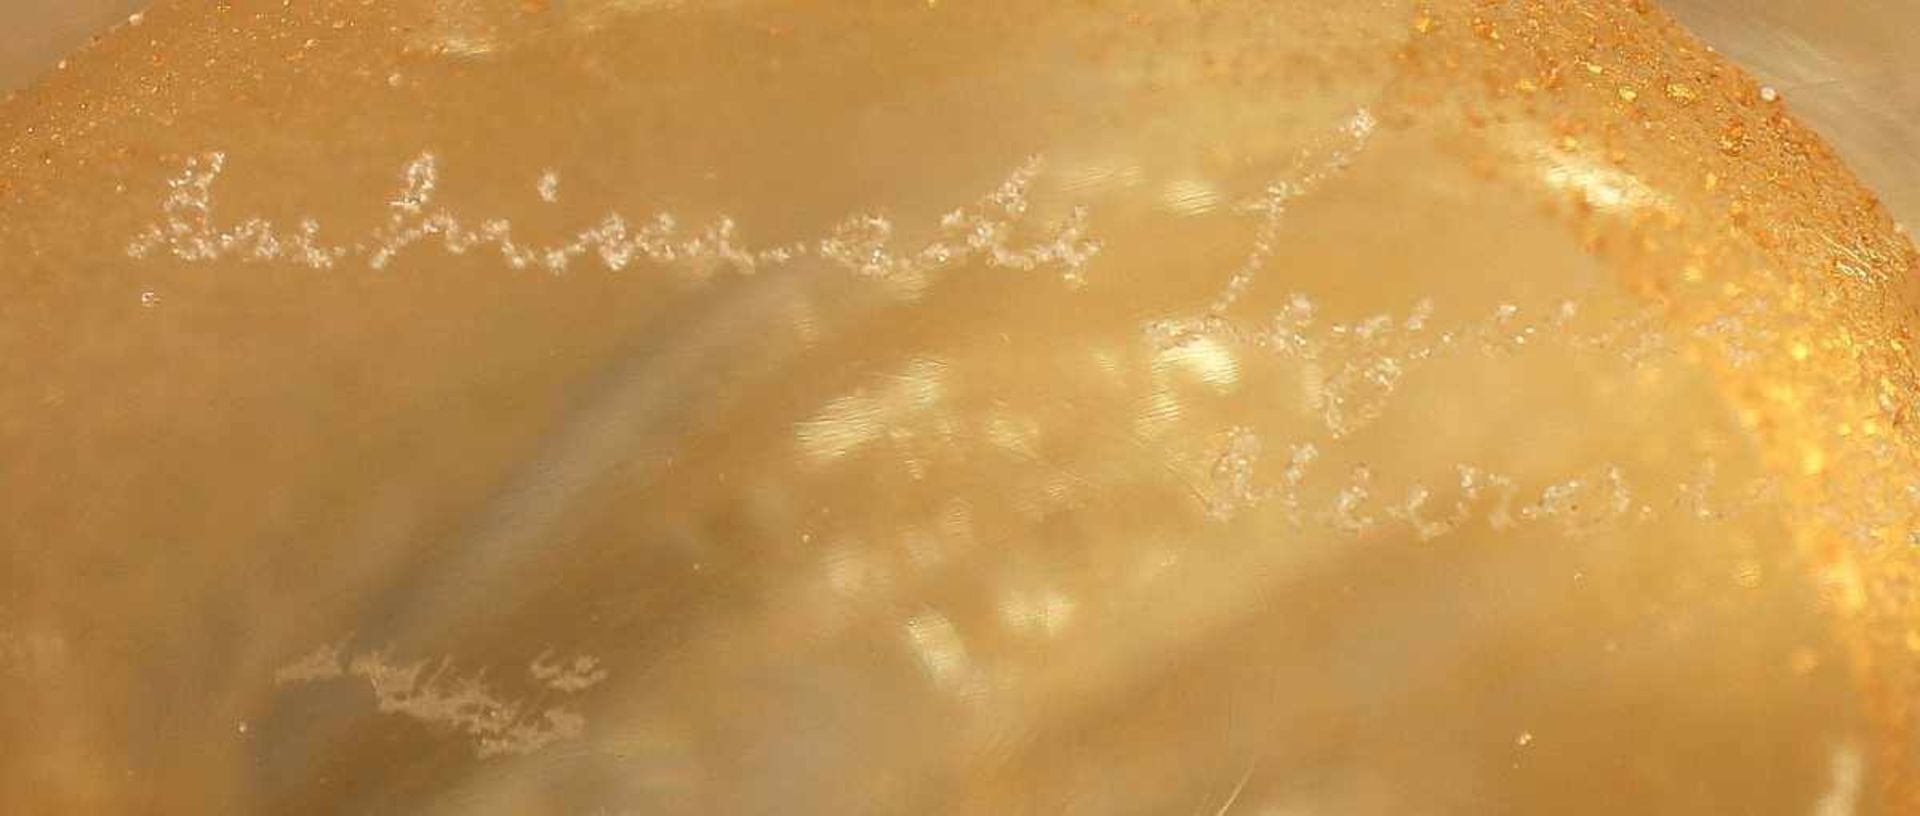 ZIERFIGUR "PFERDEKOPF", farbloses Glas, Goldstaubeinschmelzungen, H 13, verso ritzsign. Archimede - Bild 3 aus 3